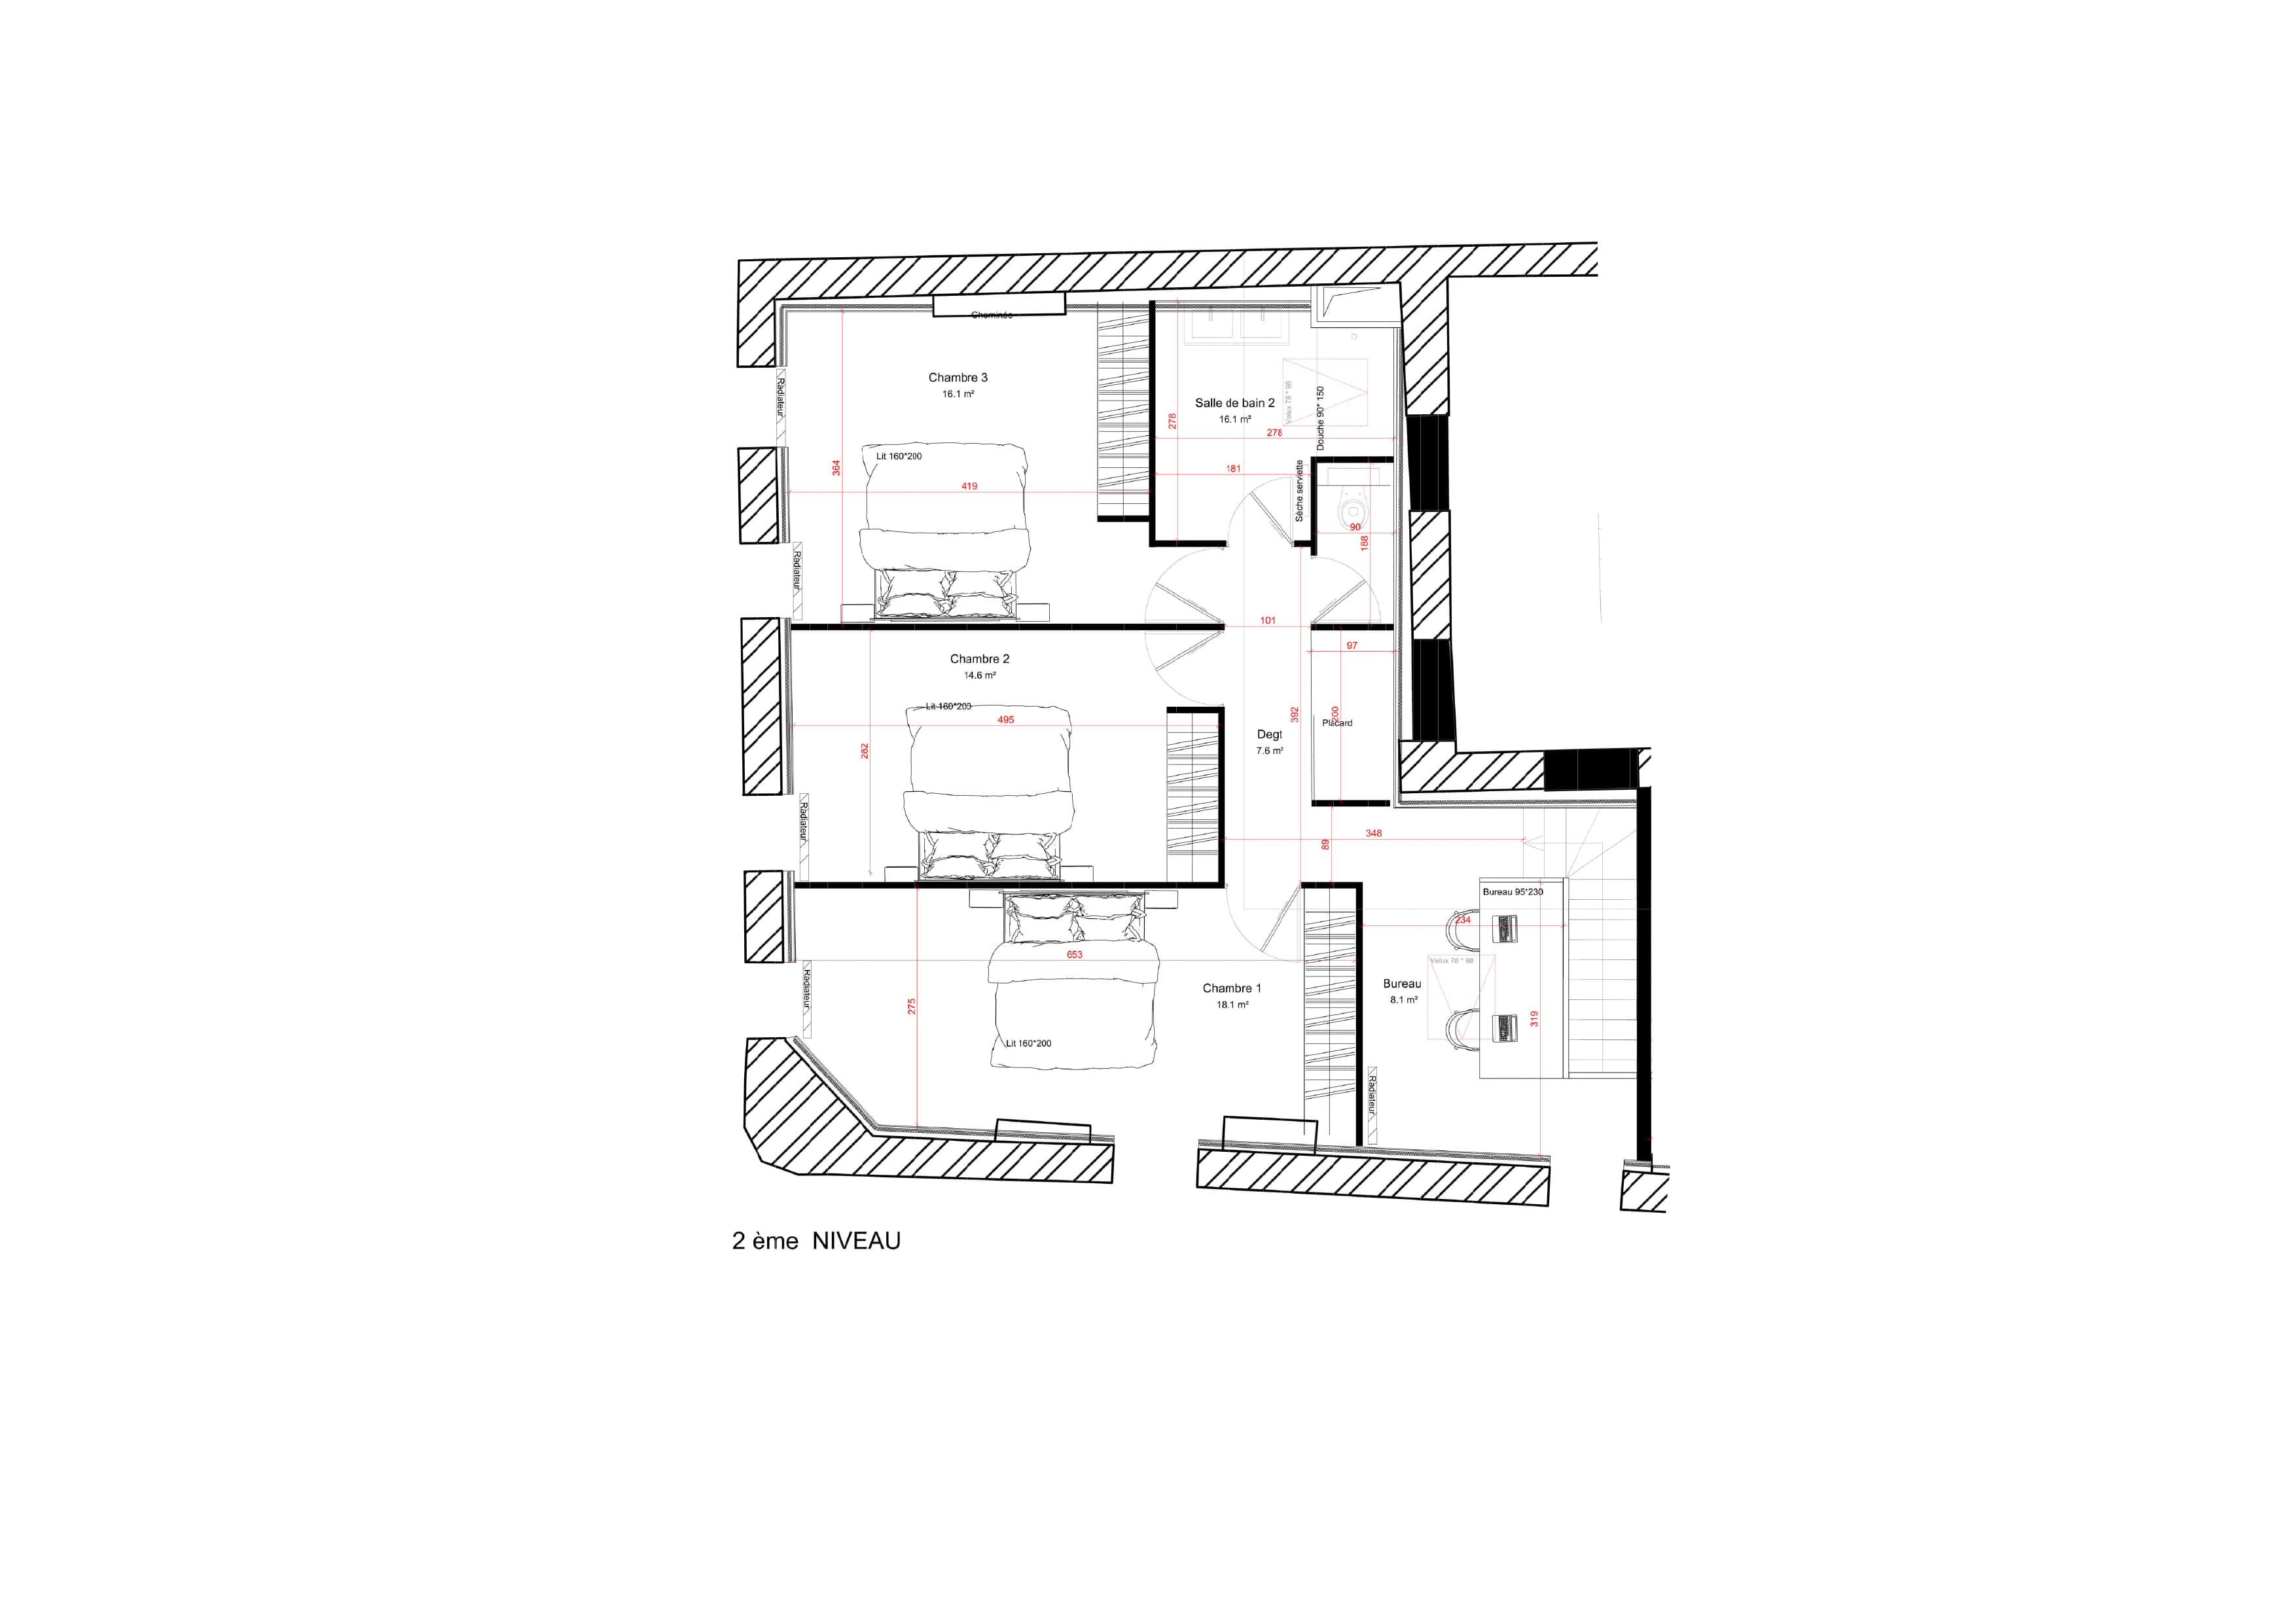 Plan duplex 150 m² avec 4 chambres et bureaux - 2ème niveau